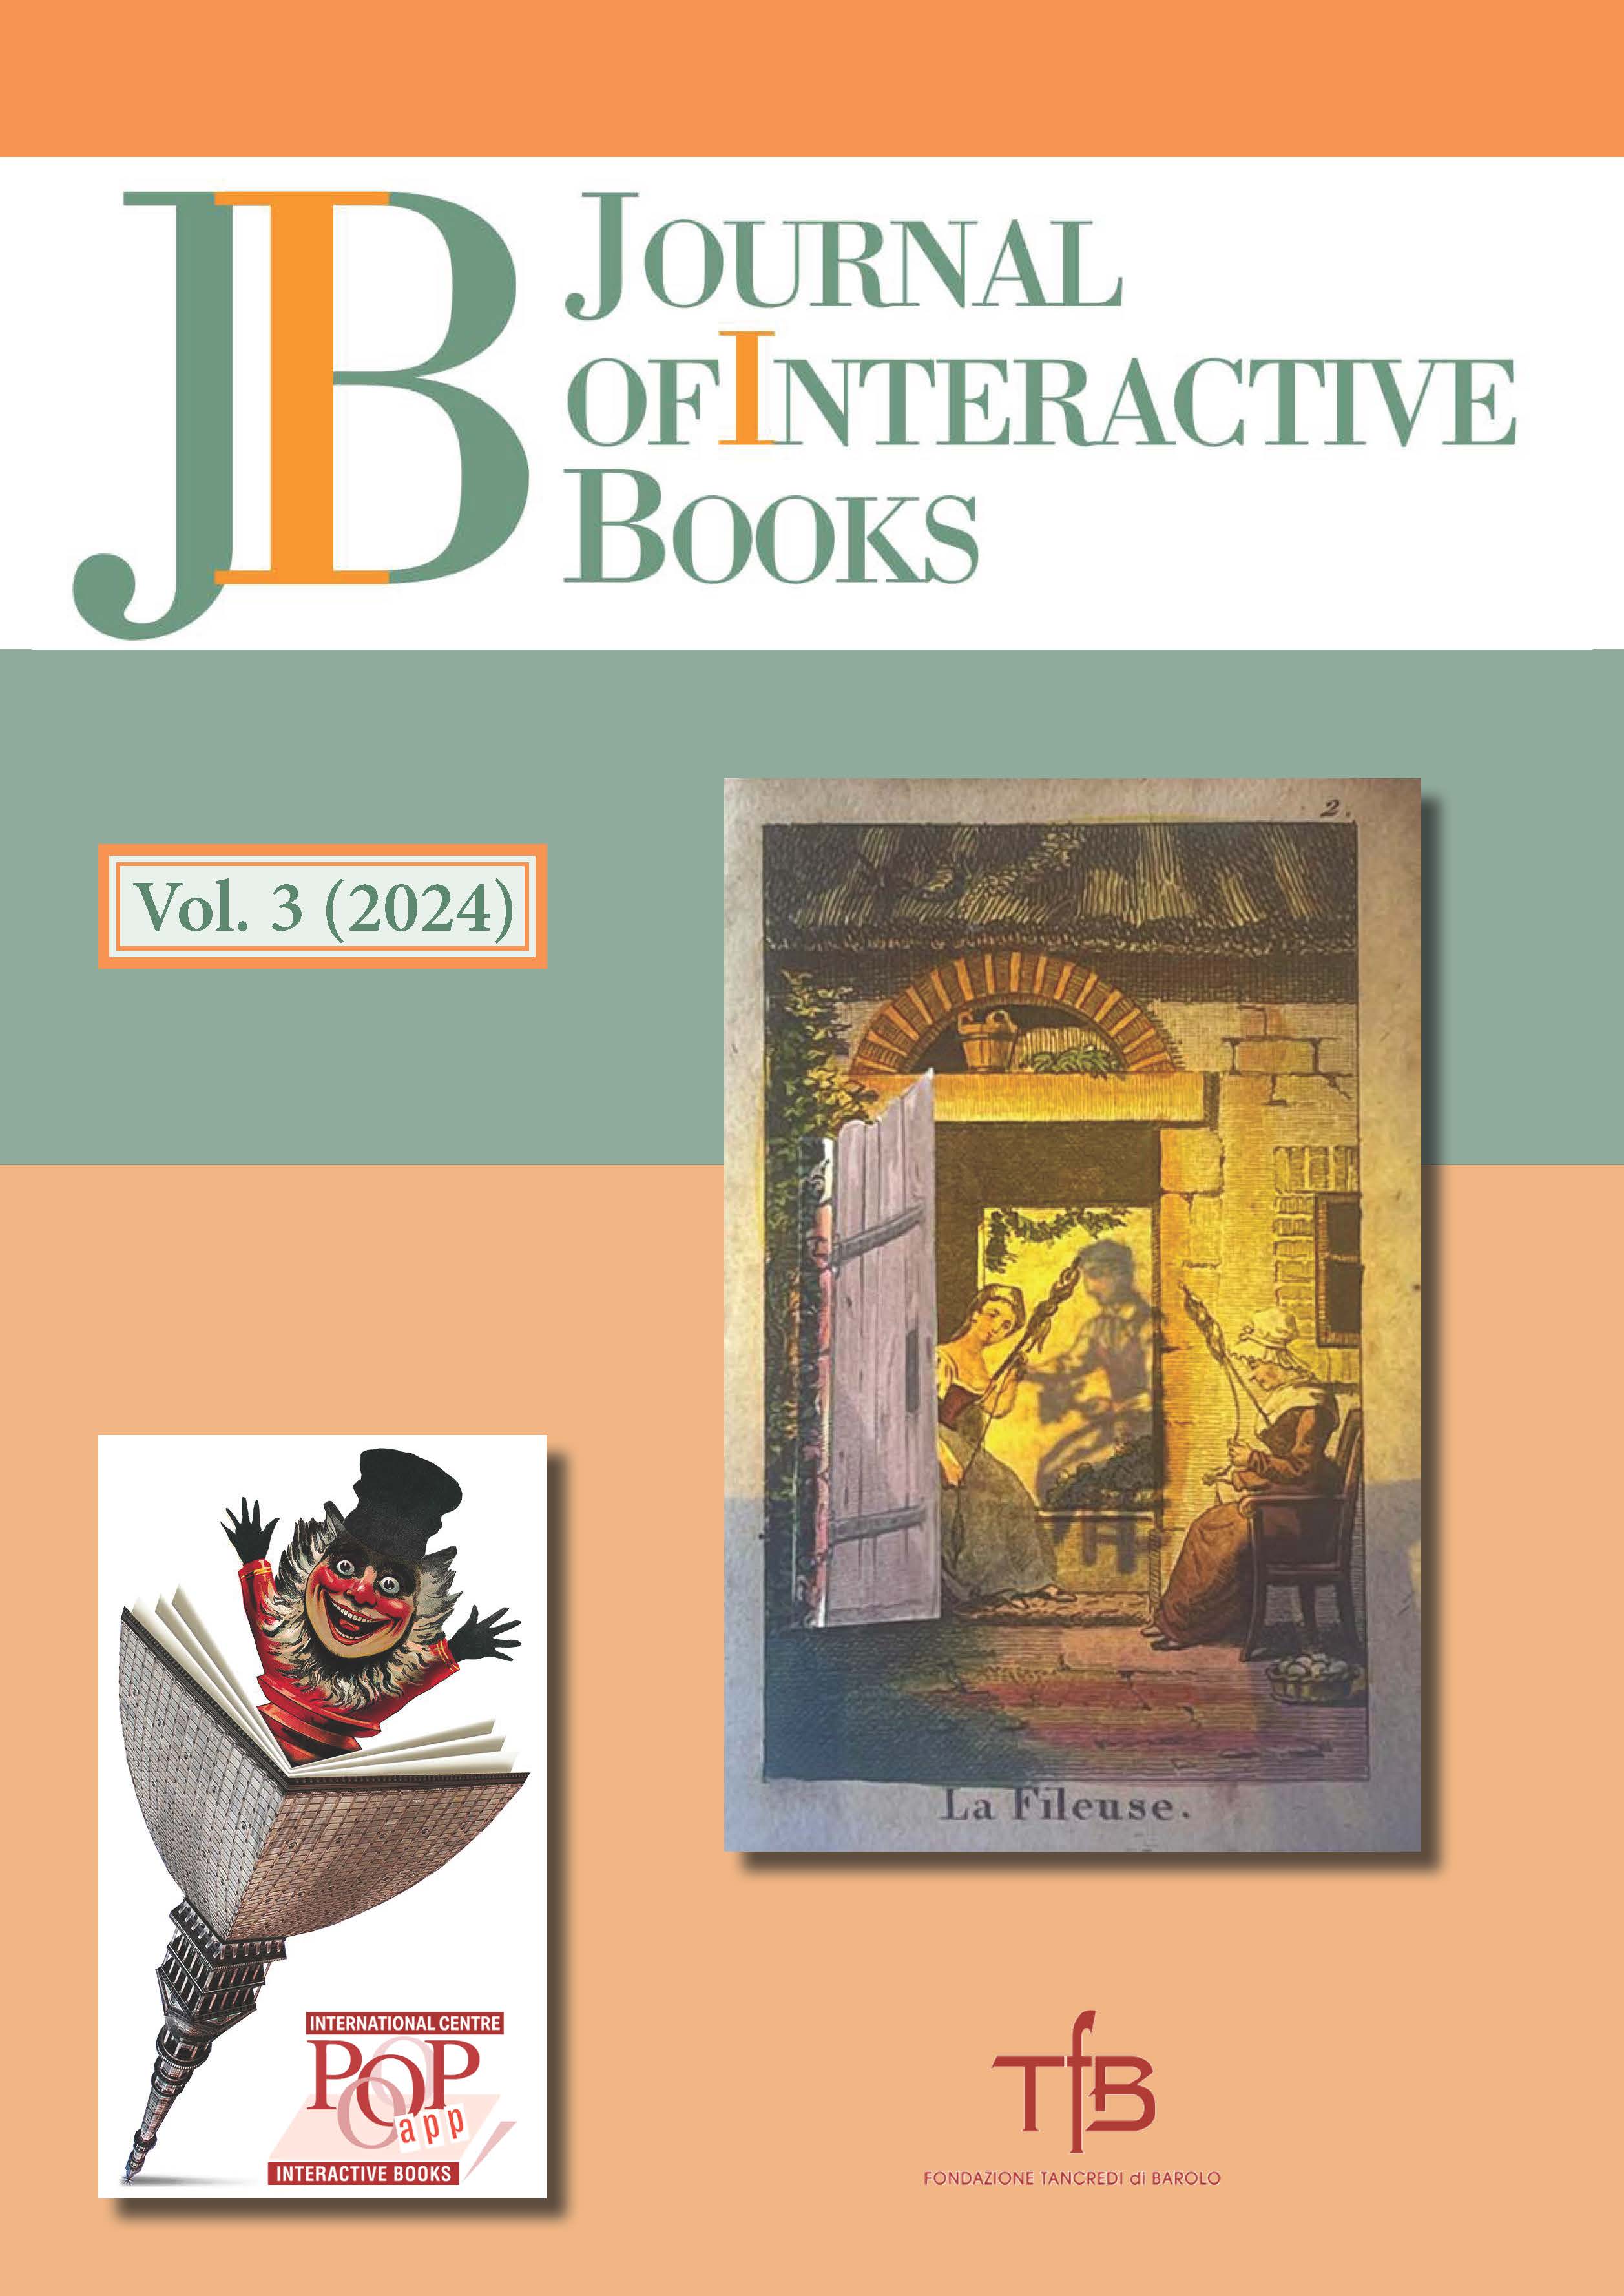 Copertina del Volume 3 (2024) del Journal of Interactive Books